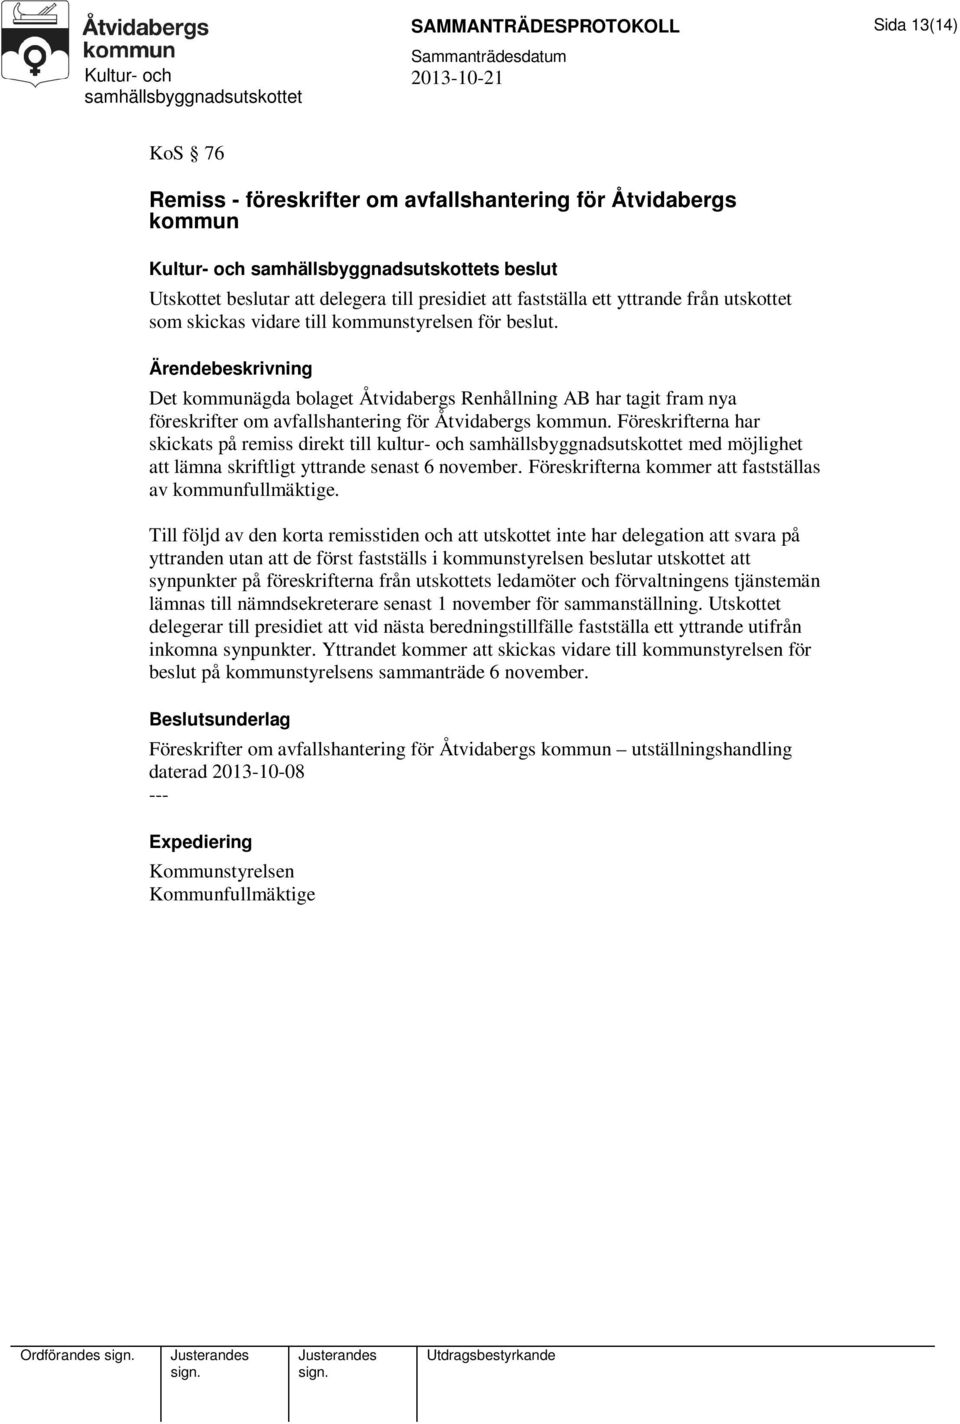 Det kommunägda bolaget Åtvidabergs Renhållning AB har tagit fram nya föreskrifter om avfallshantering för Åtvidabergs kommun.